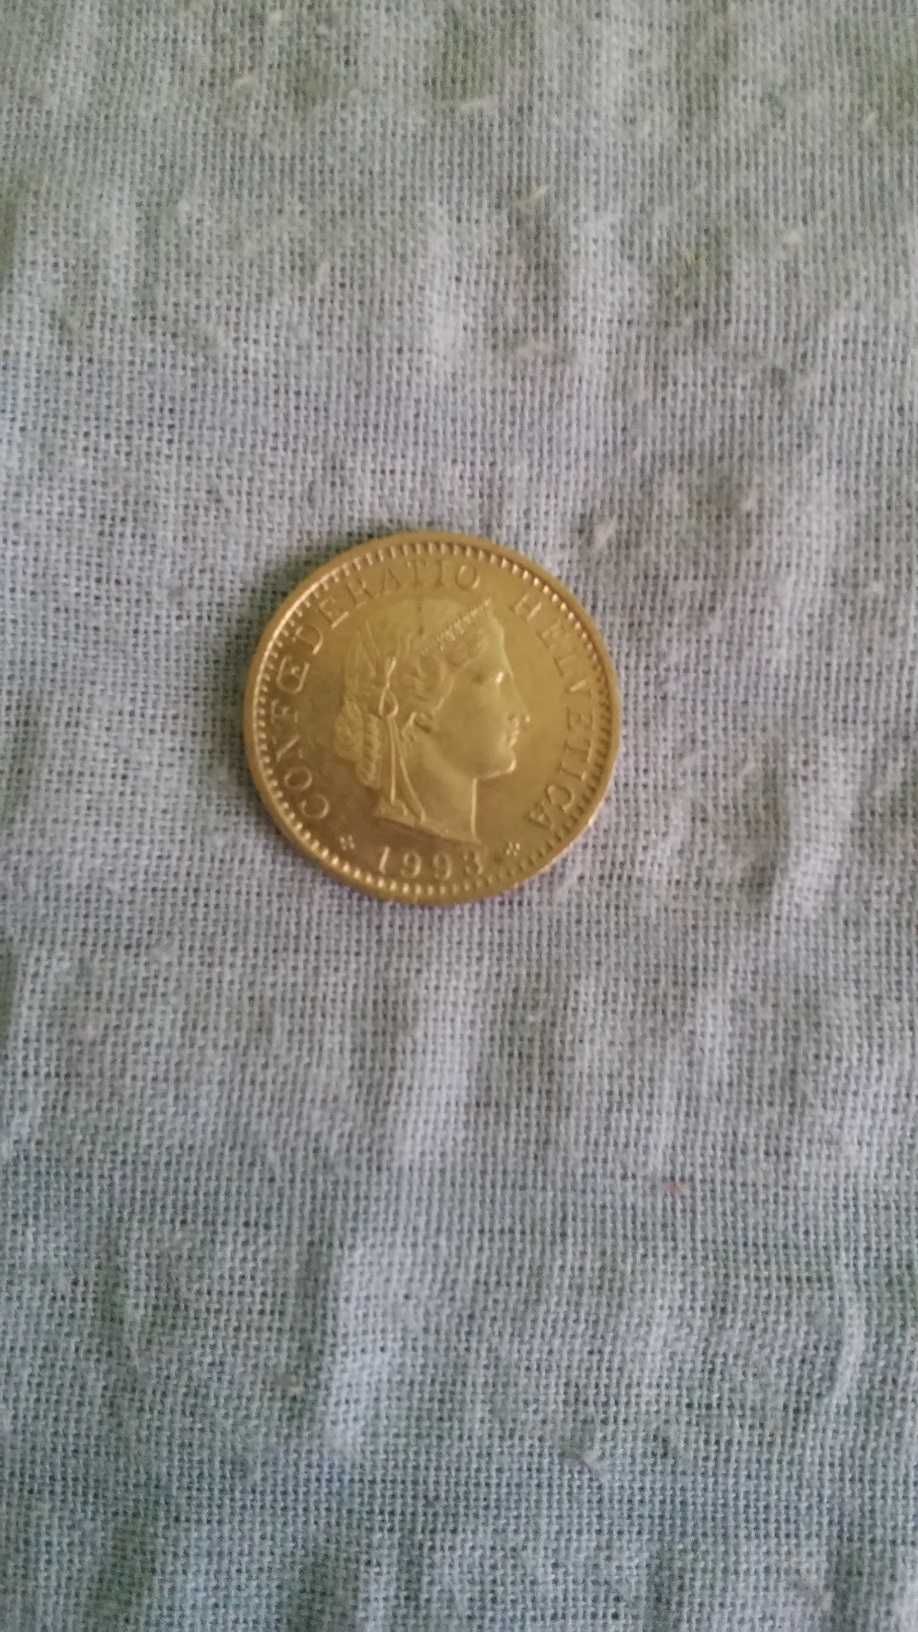 Szwajcaria - moneta do kolekcji